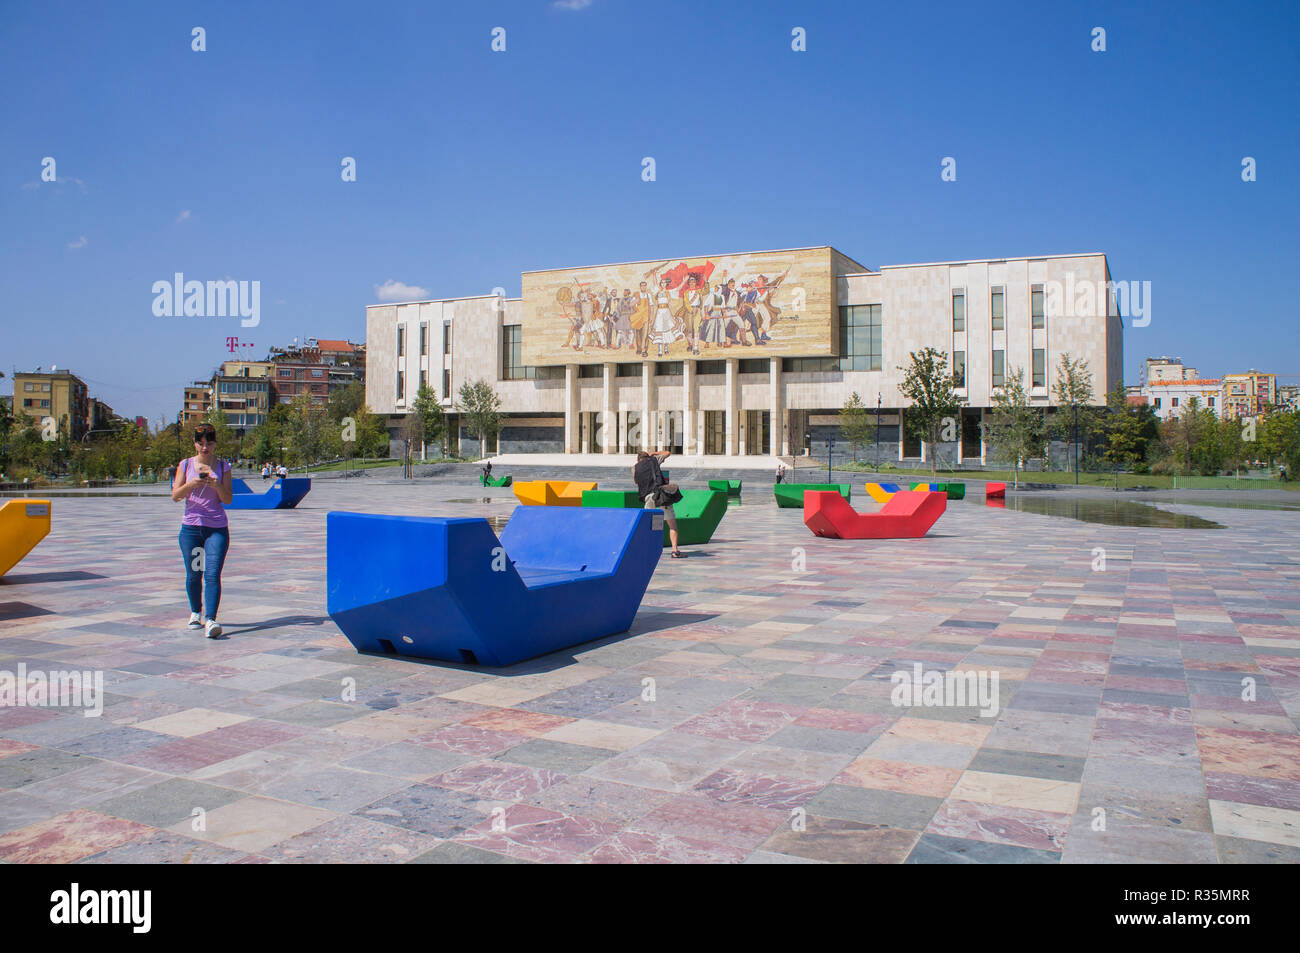 Das Nationalmuseum für Geschichte (Albanisch, Muzeu Historik Kombetar) in Skanderbeg Square in Tirana, der Hauptstadt und größten Stadt Albaniens. September Stockfoto